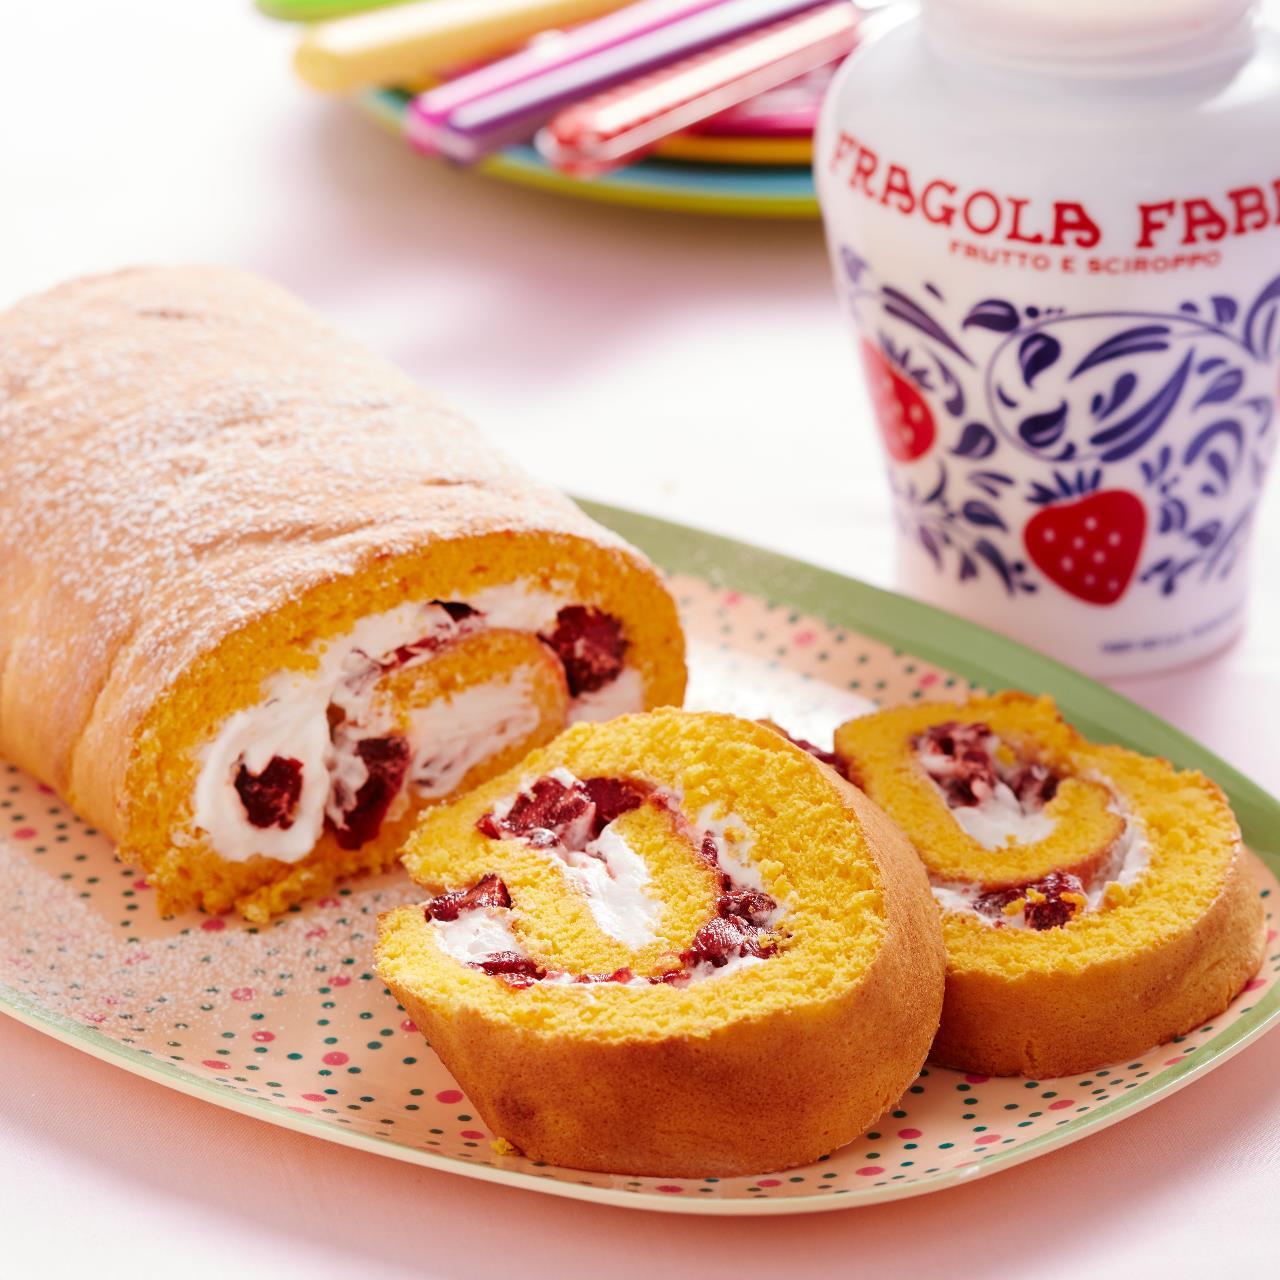 Cream Roll with Fragola Fabbri